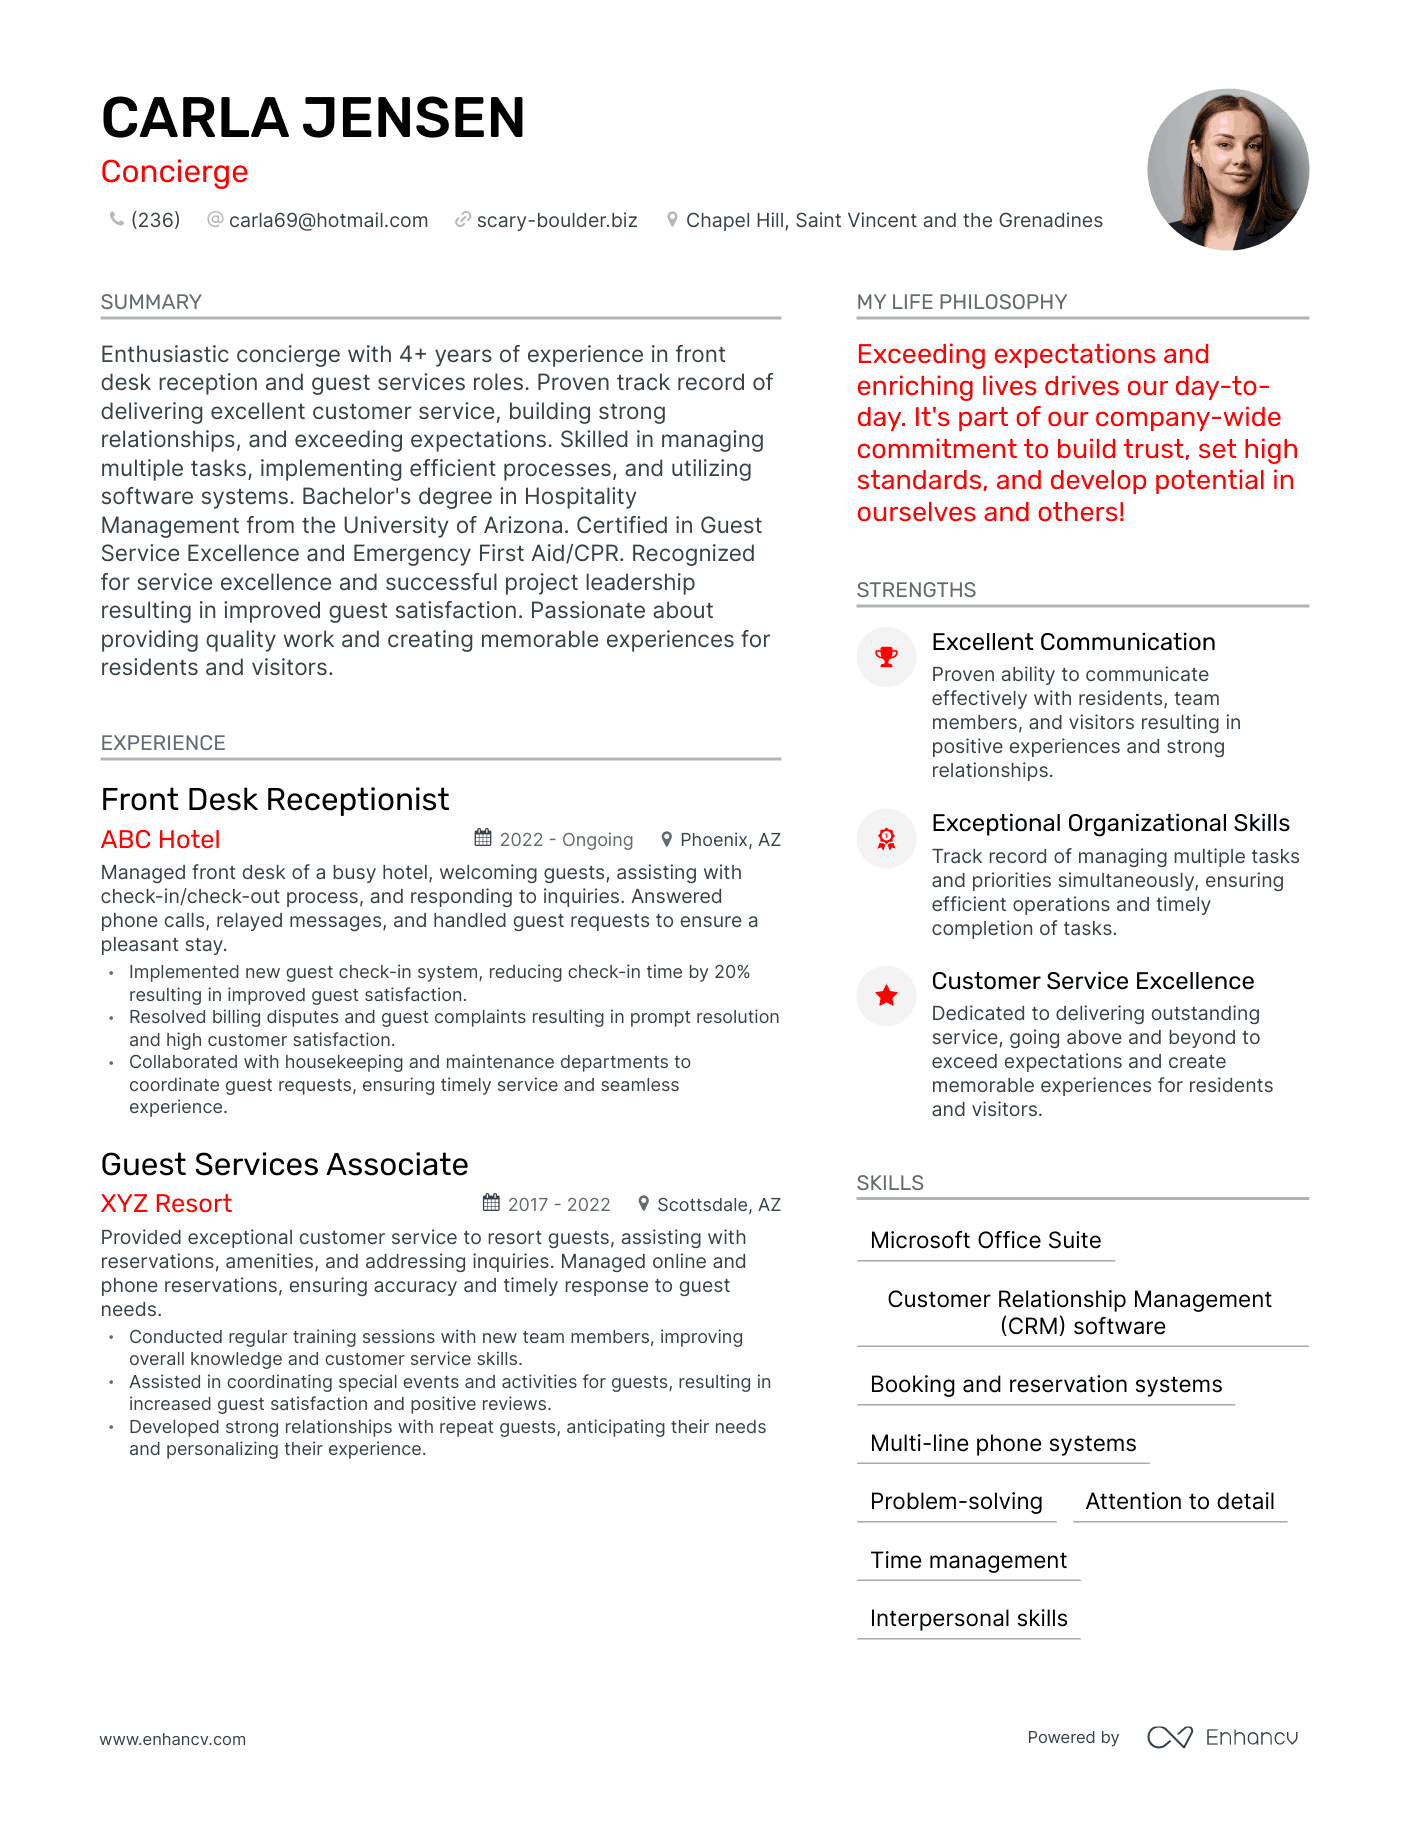 Concierge resume example